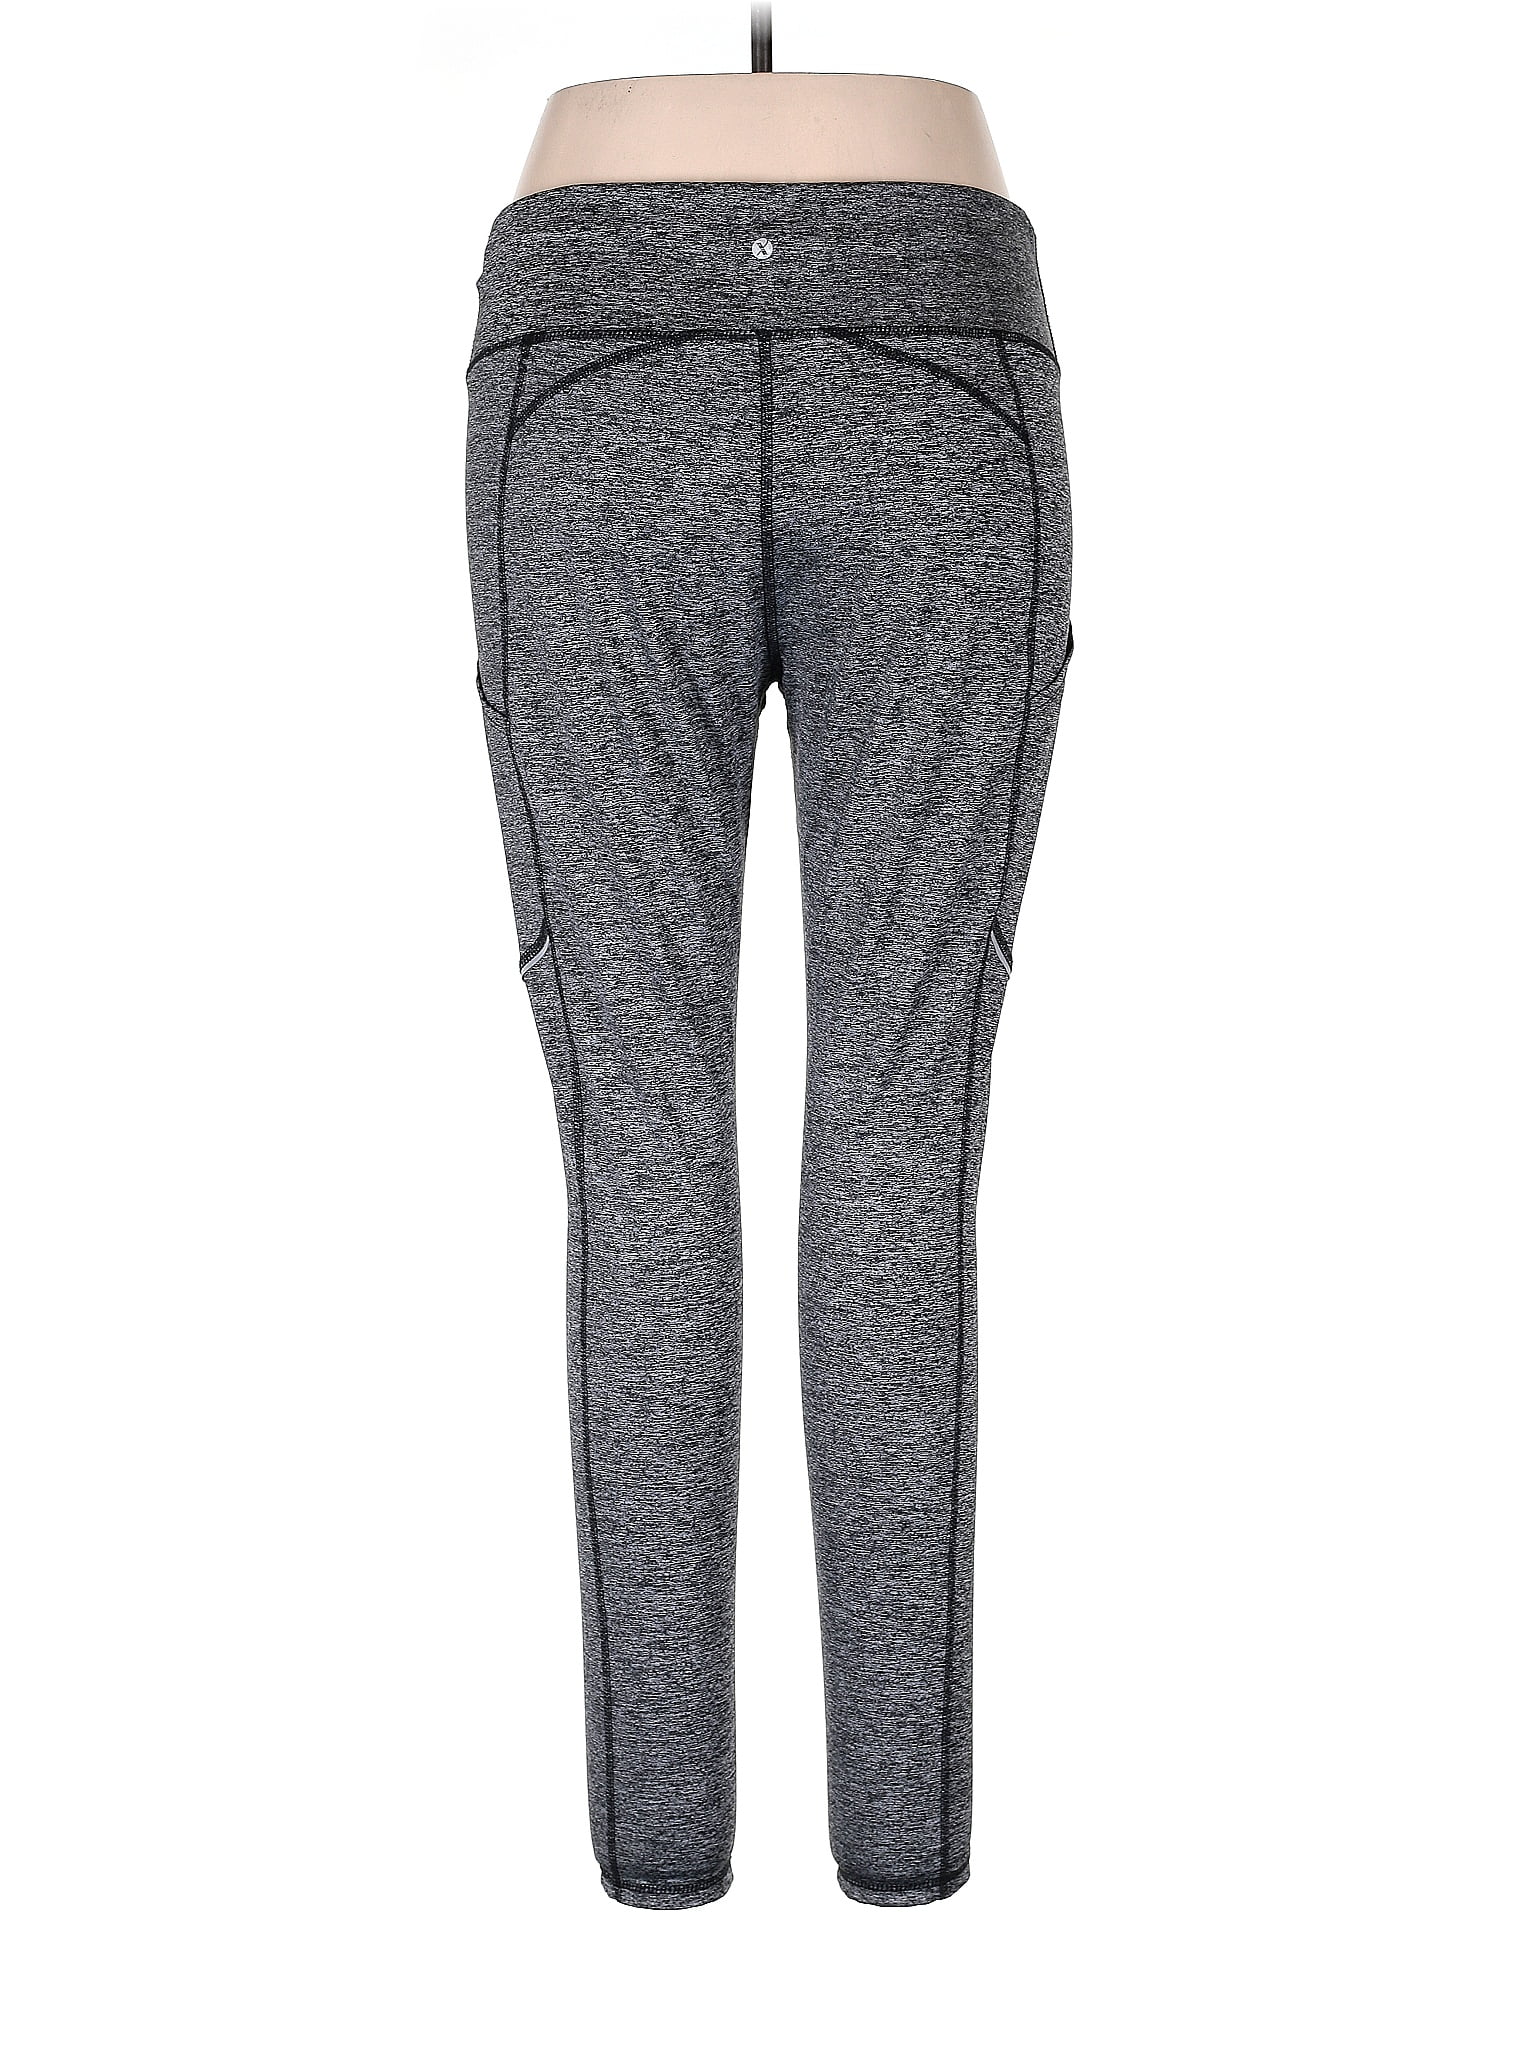 Xersion Women's Active Wear Pants Size Medium Gray on eBid